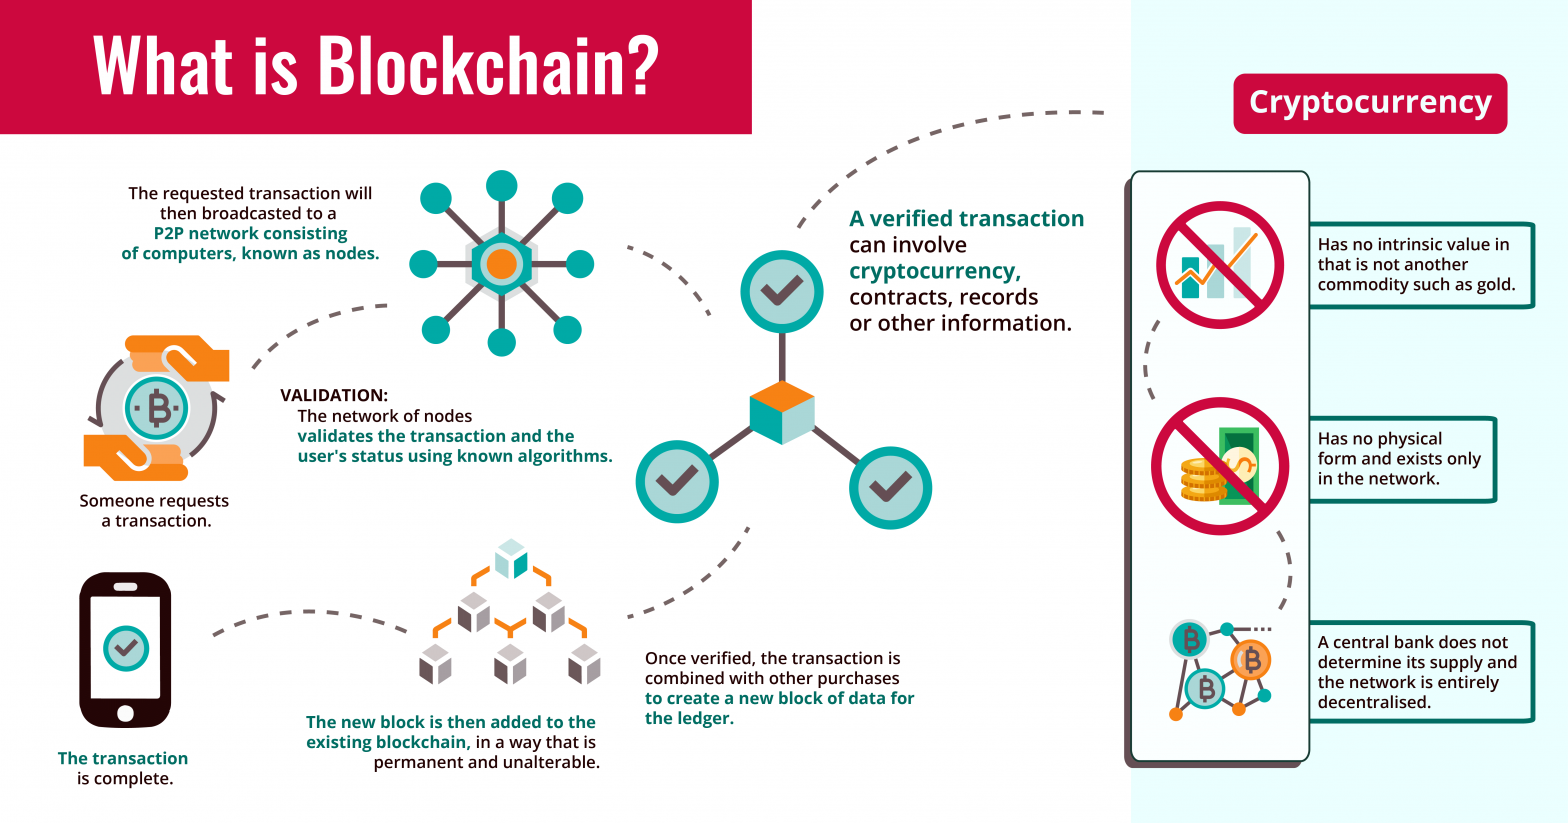 10 ways to use blockchain